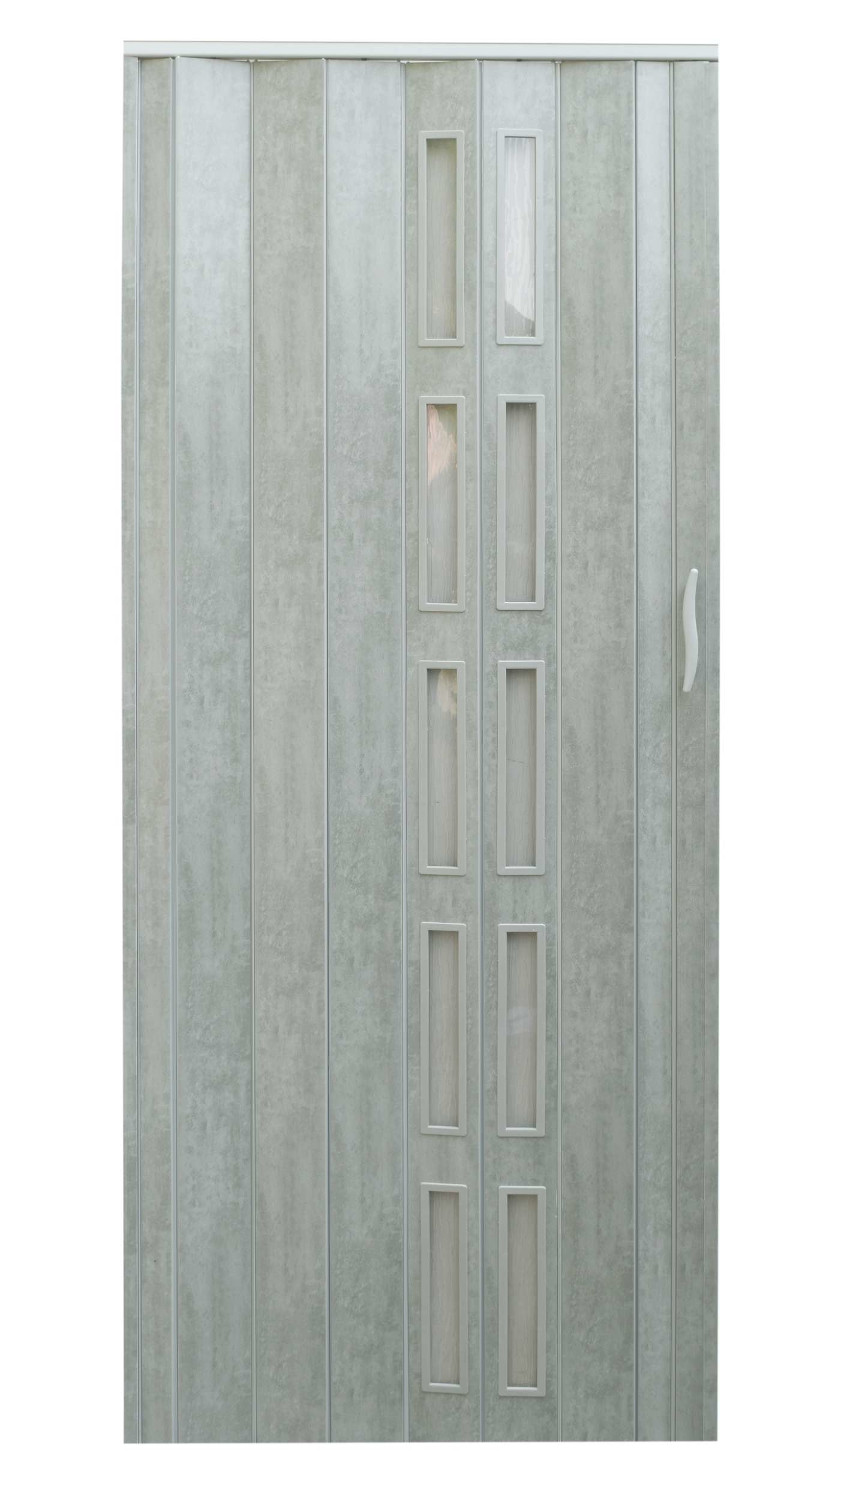  Drzwi harmonijkowe 005S-61-100 beton mat 100 cm